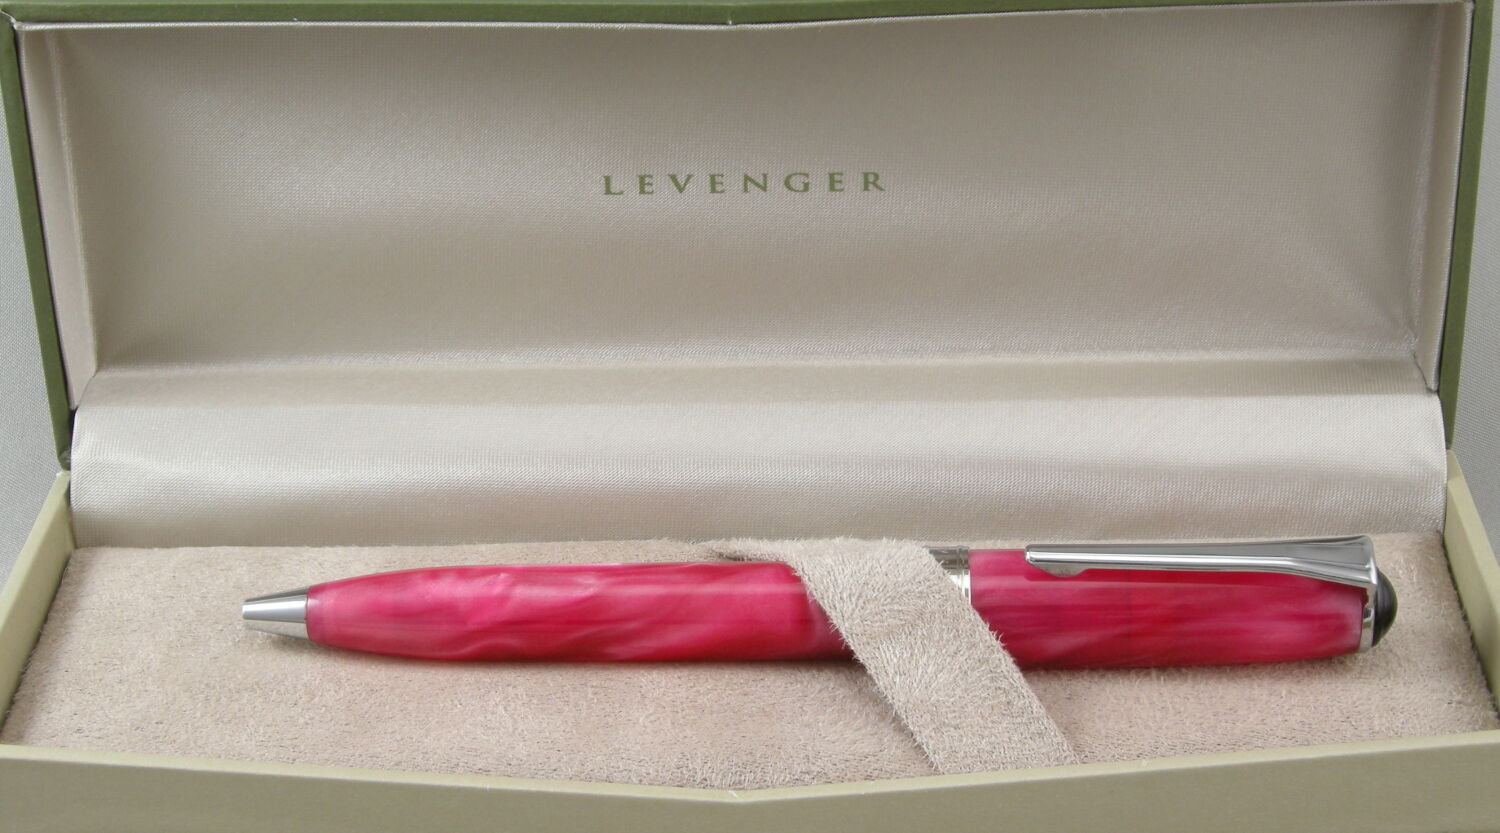 Levenger True Writer Pink & Chrome Ballpoint Pen - New In Box